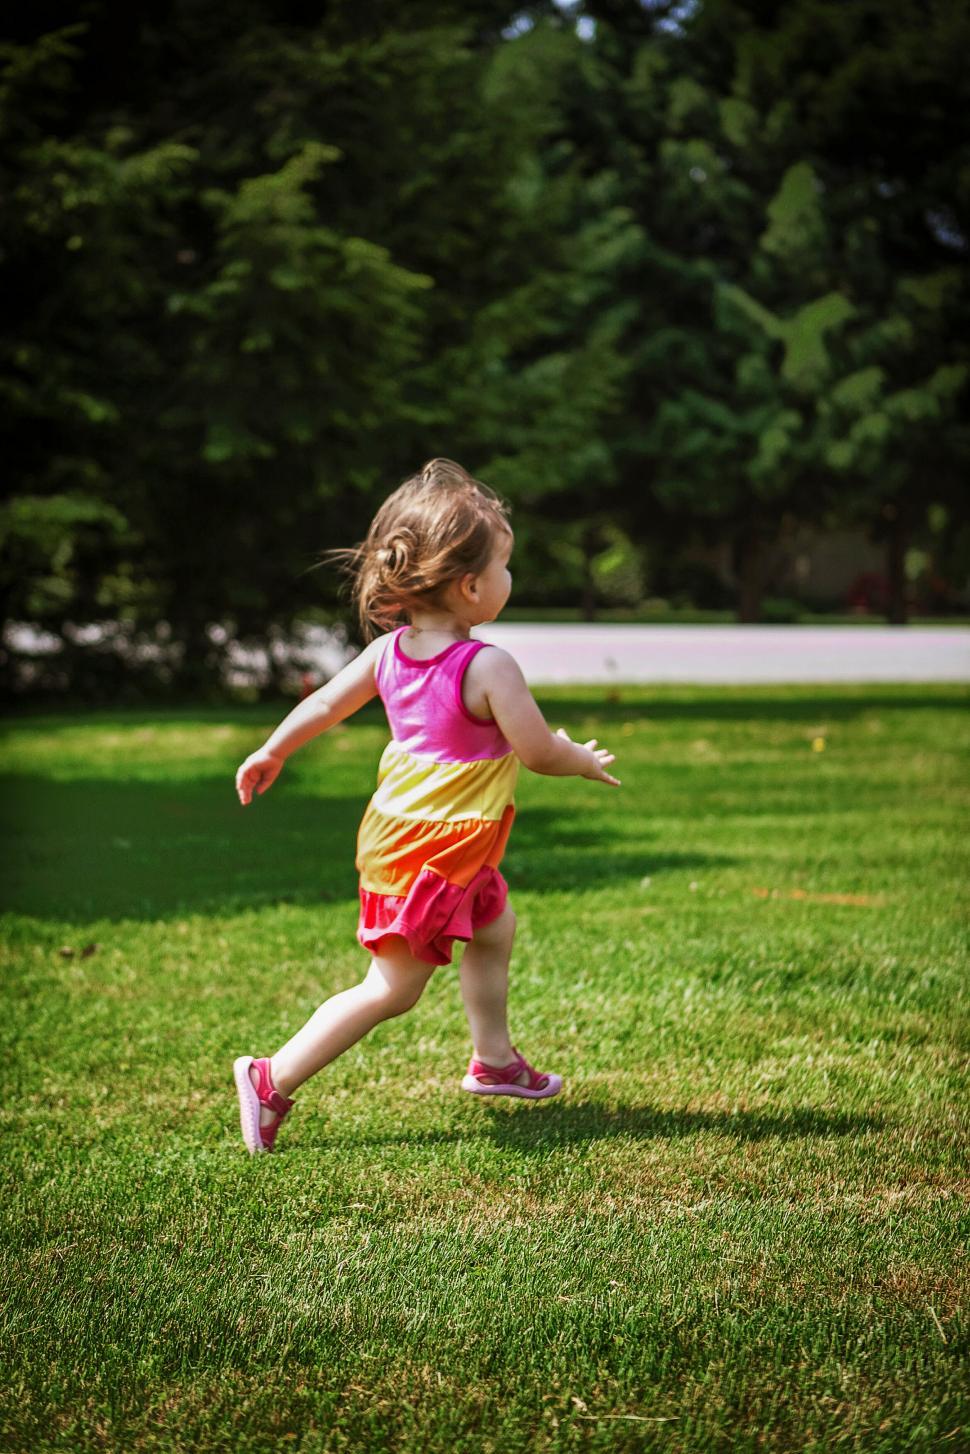 Free Image of Little girl running joyfully in park during summer 